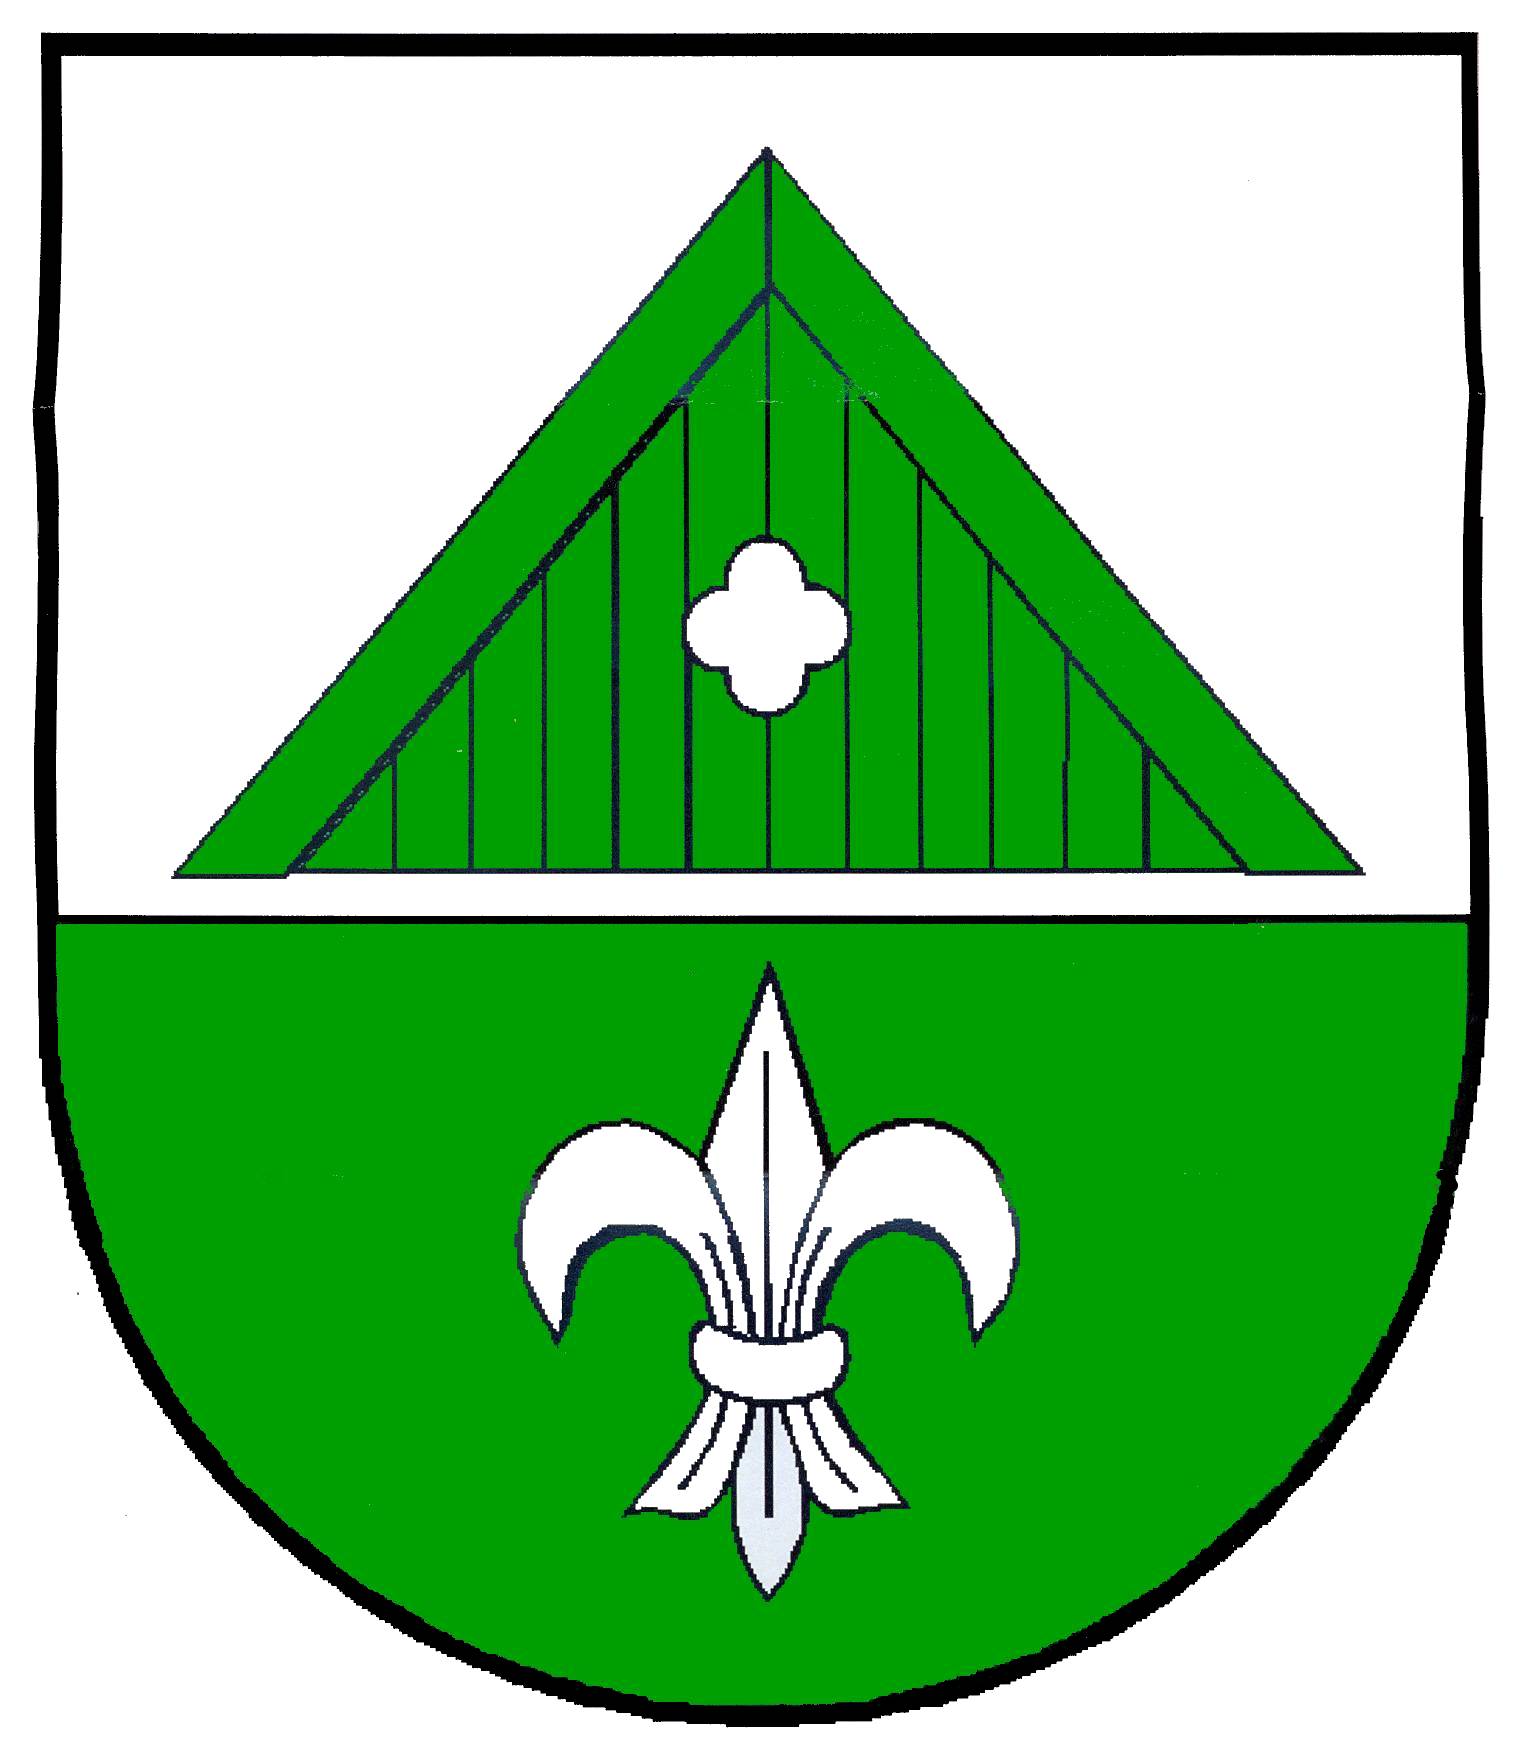 Wappen Gemeinde Rendswühren, Kreis Plön